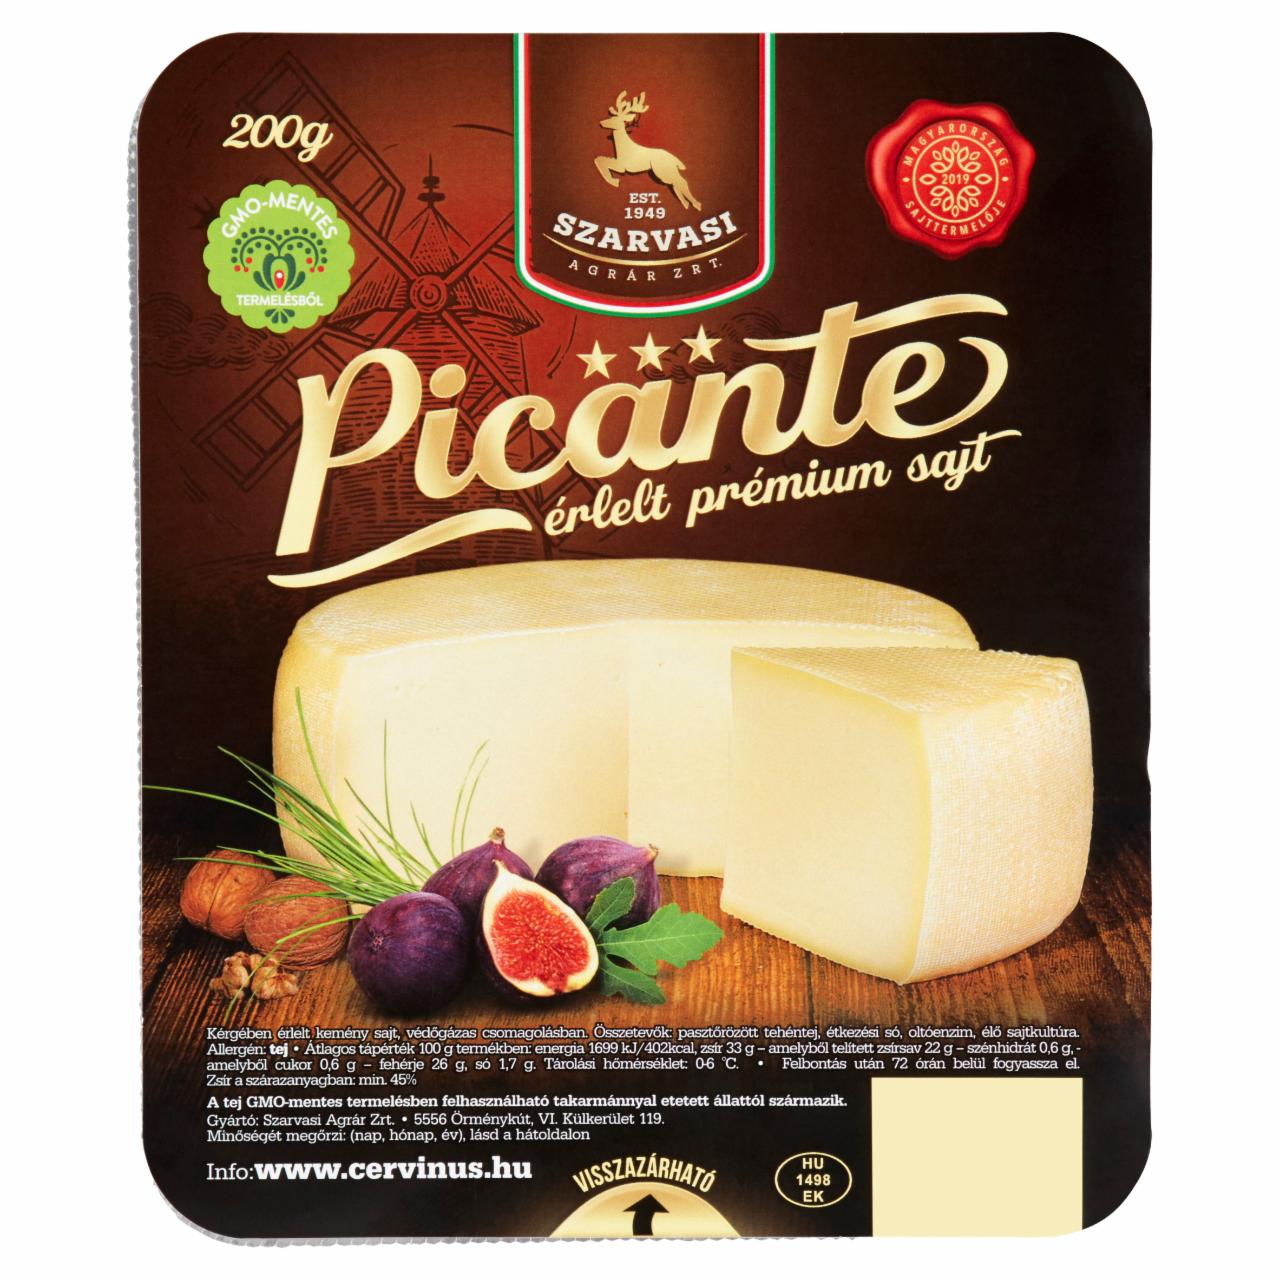 Képek - Szarvasi Picante kérgében érlelt kemény sajt 200 g